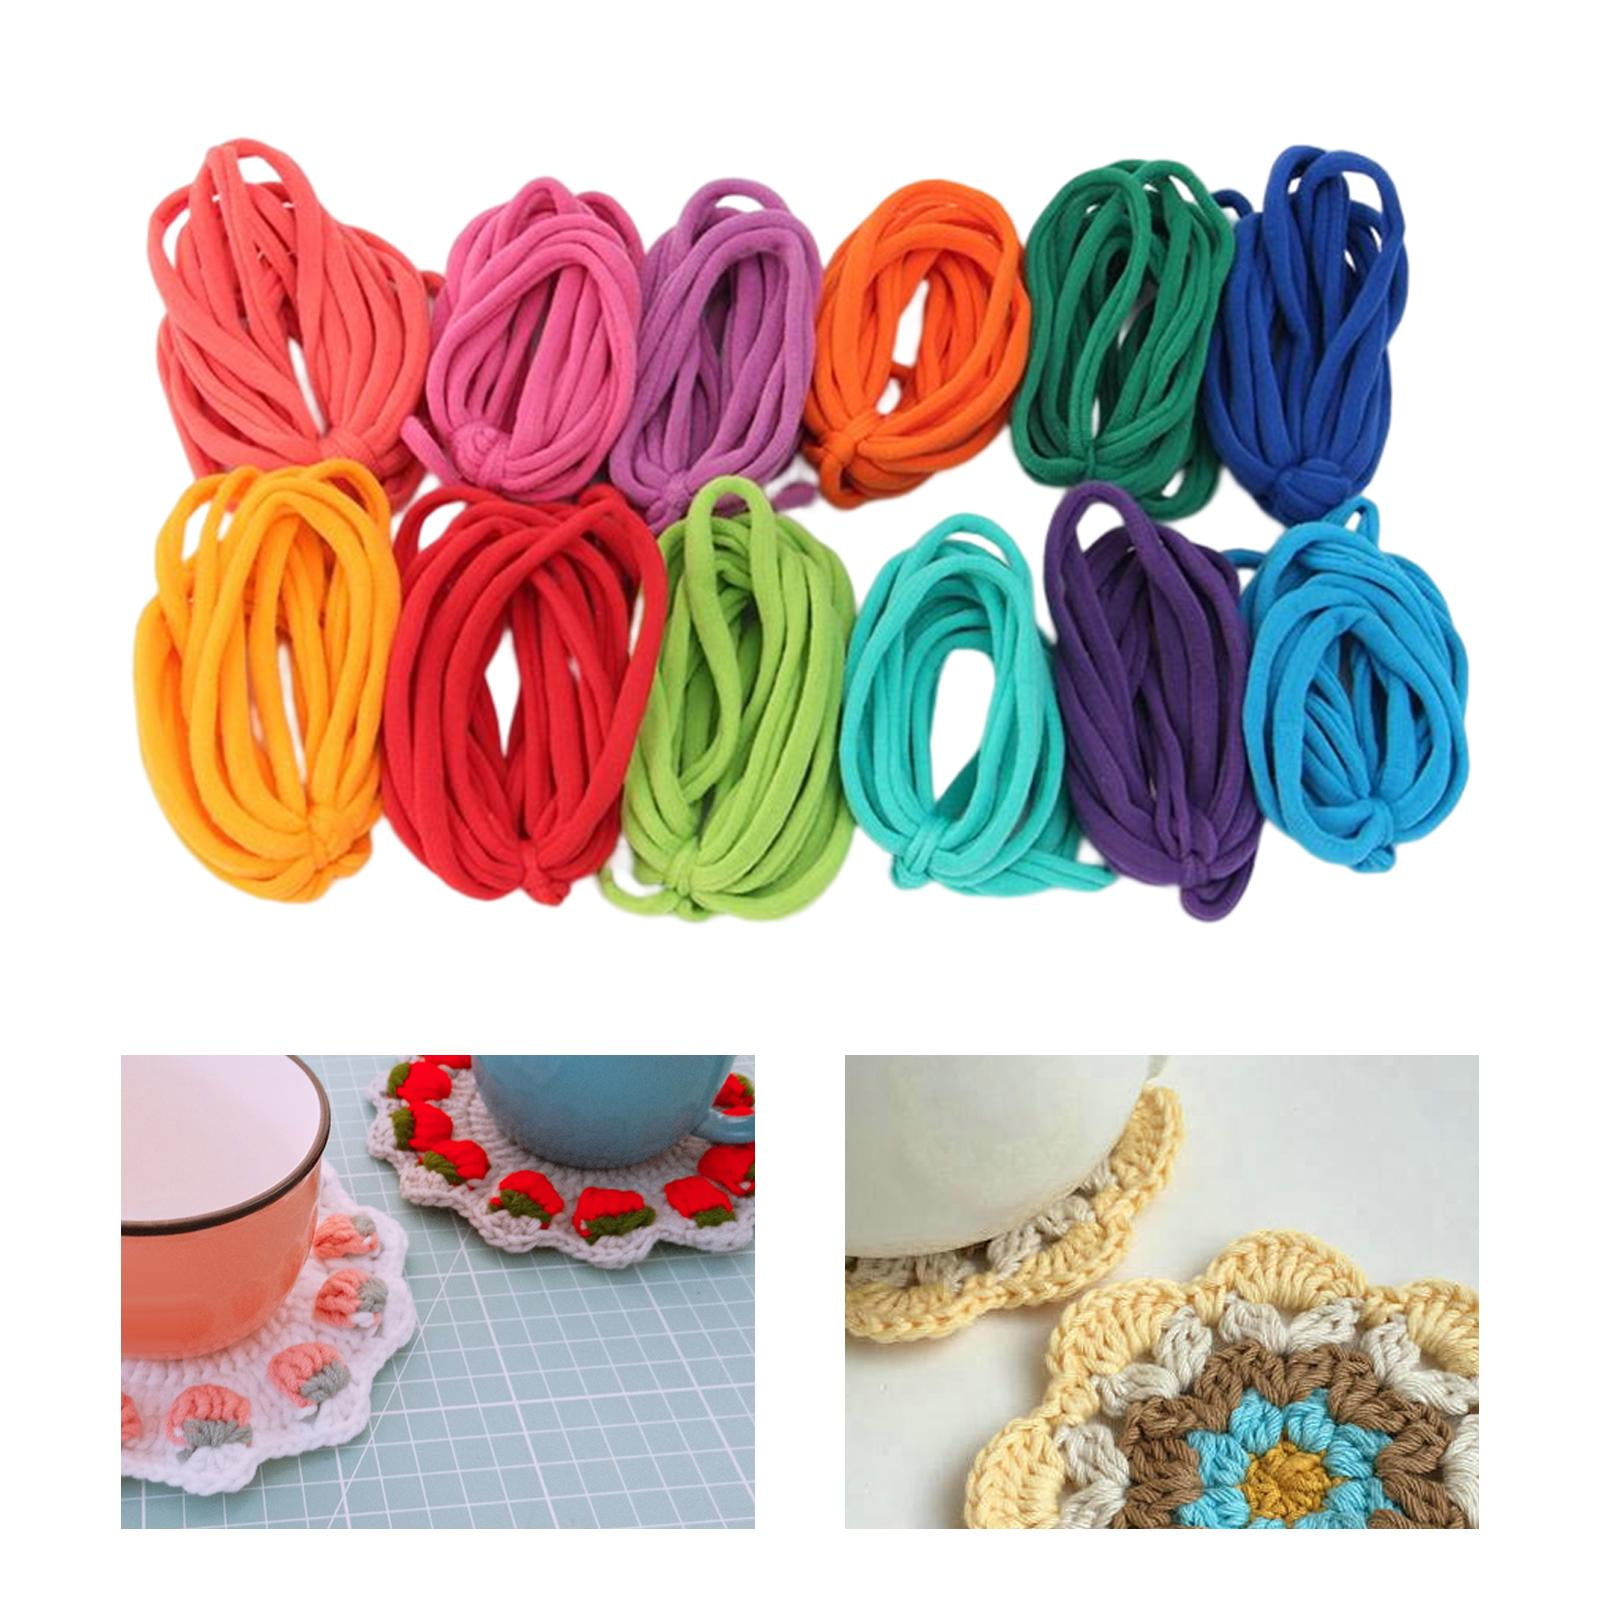 Nisorpa Afghan Loom Knitting Board, Weave Loom Kit, Knitting Sweater  Helper, Creative DIY Knitting